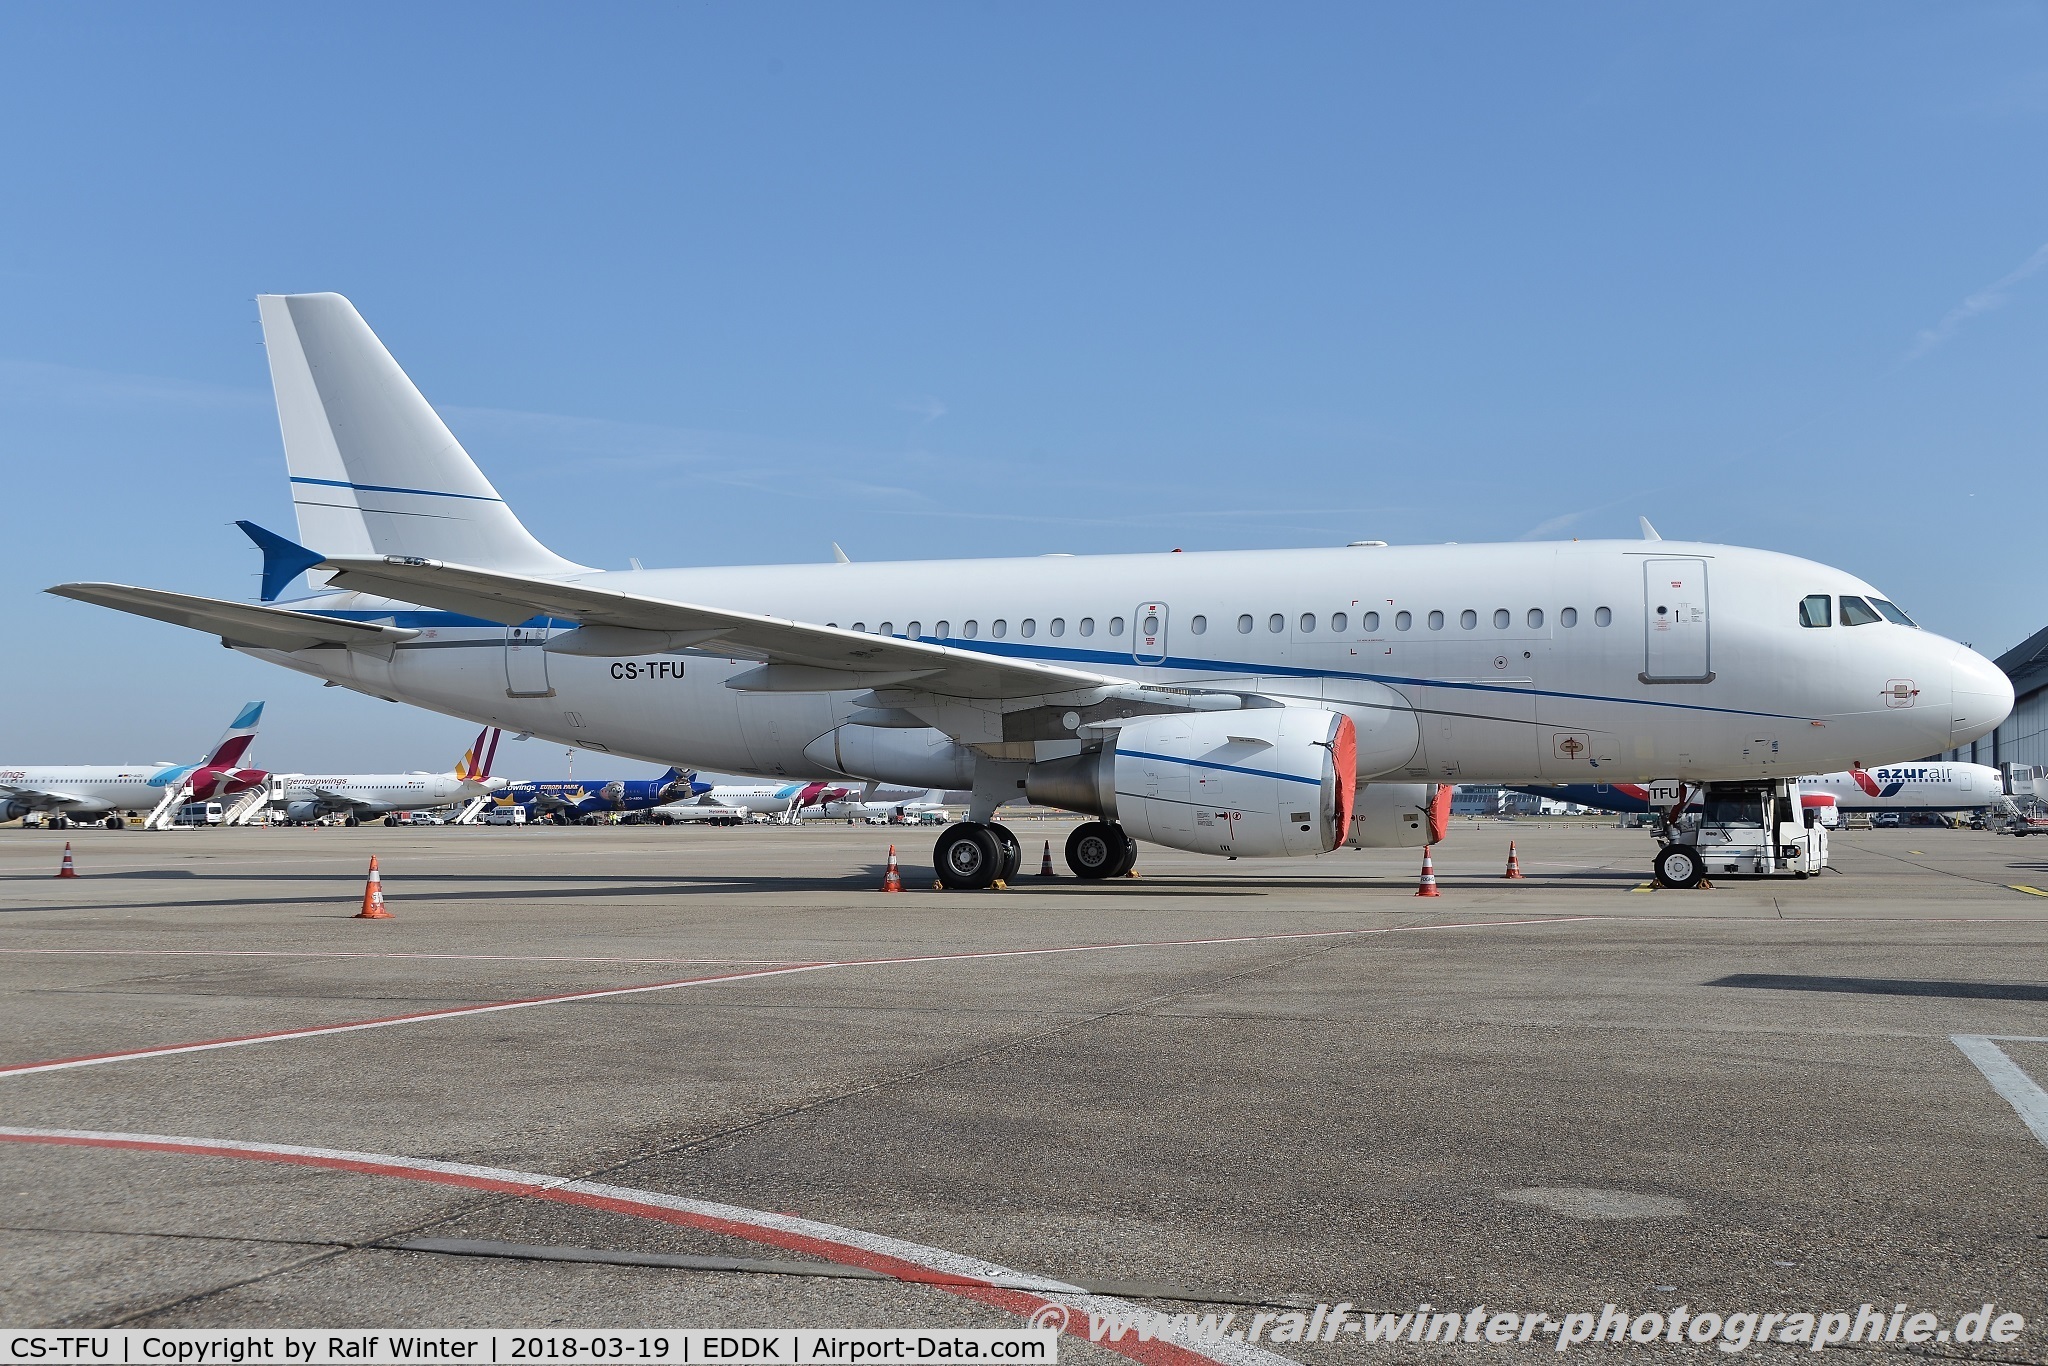 CS-TFU, 2005 Airbus A319-115LR C/N 2440, Airbus A319-115LR - WHT White Airways - 2440 - CS-TFU - 19.03.2018 - CGN